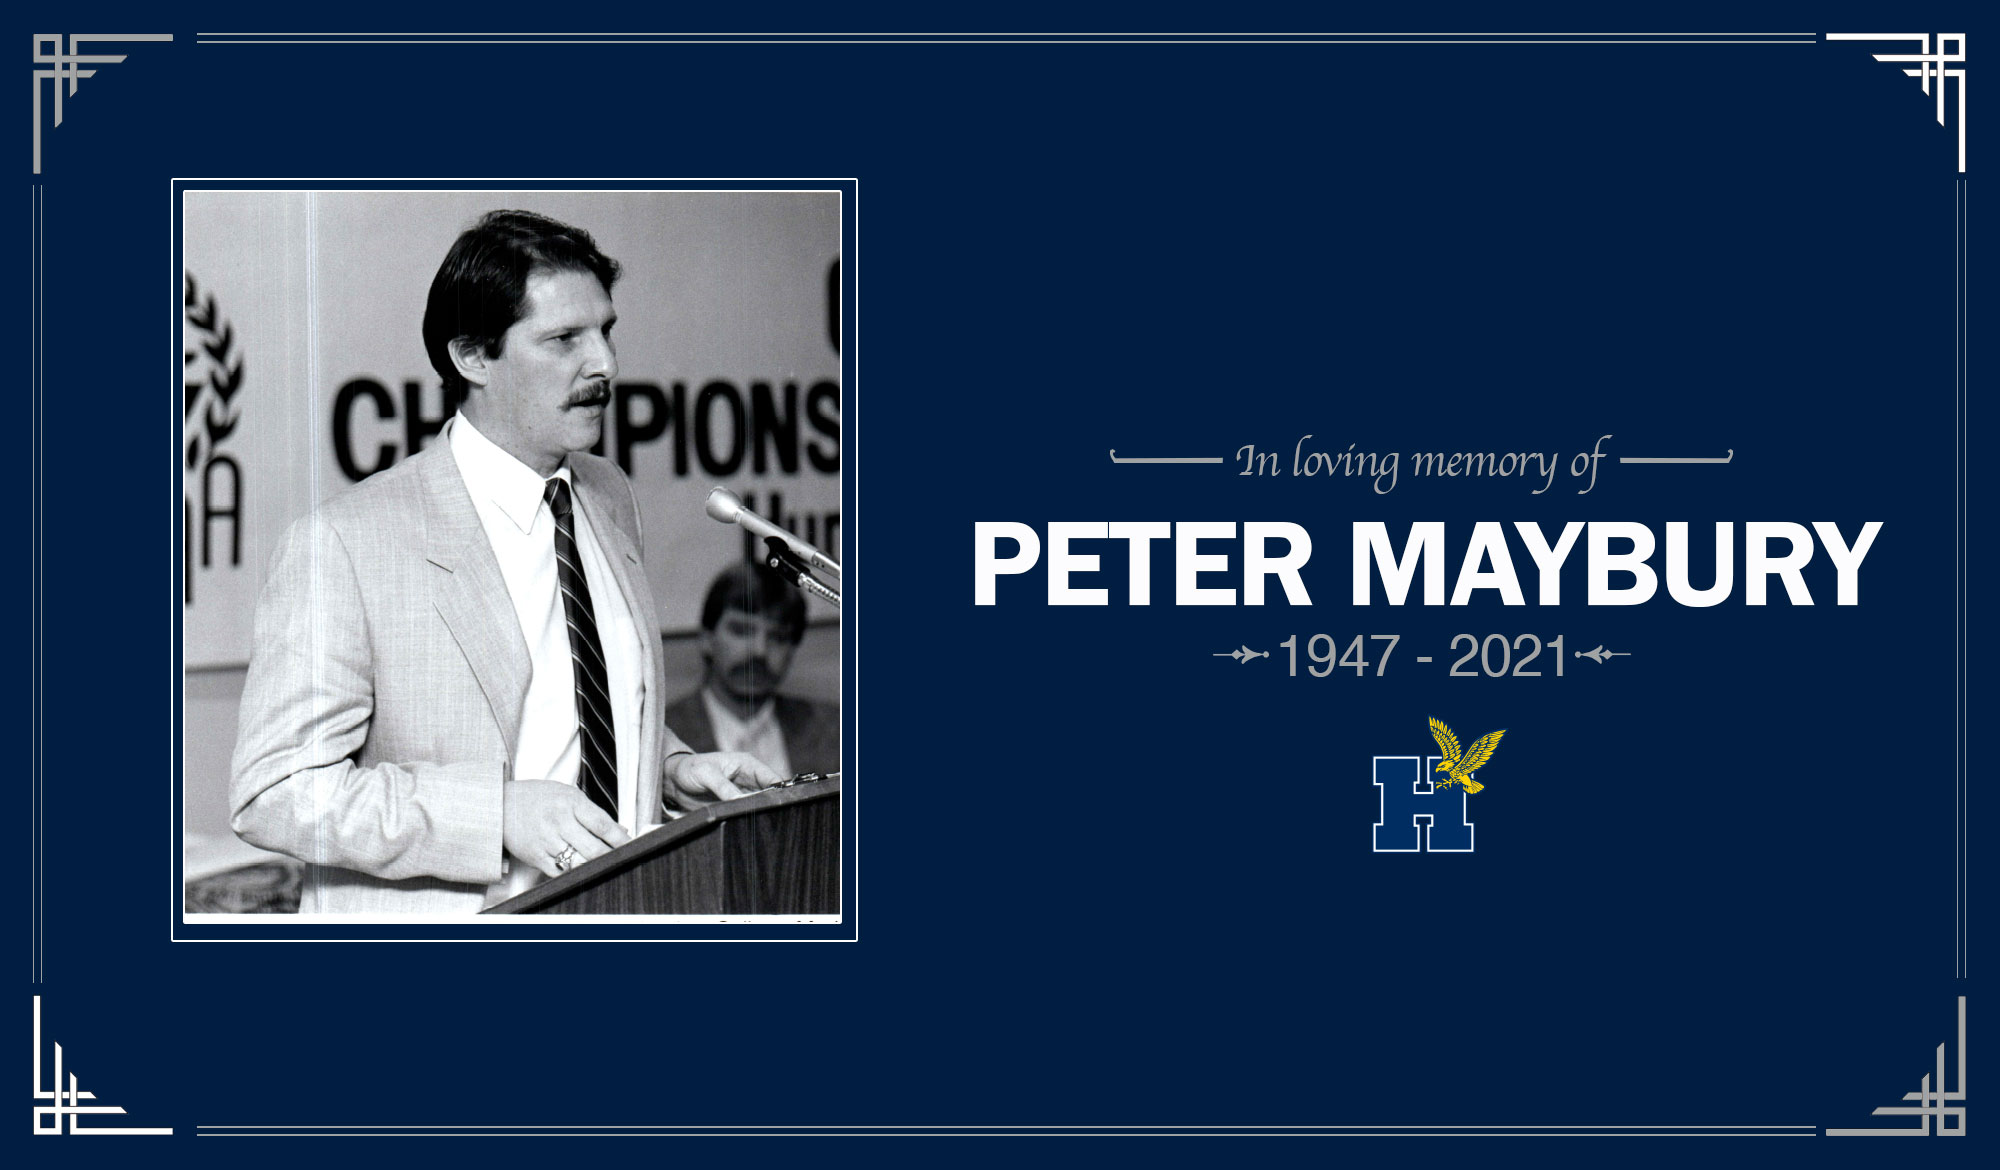 In loving memory of Peter Maybury, 1947-2021